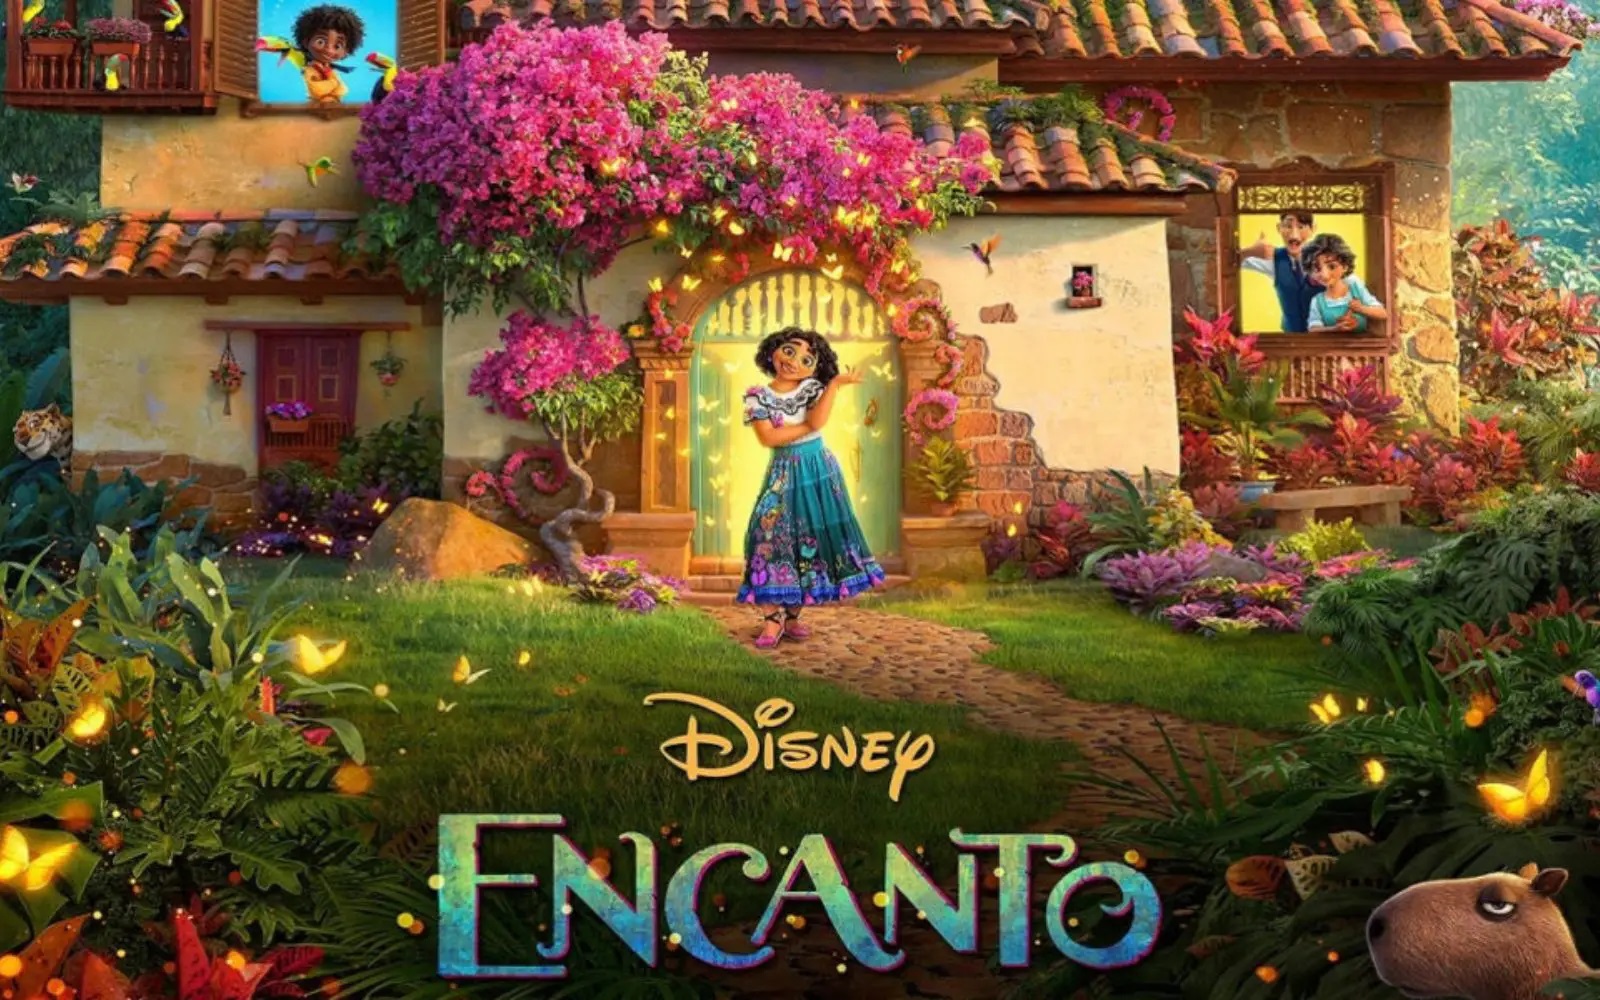 Encanto: La nueva película de Disney ambientada en Colombia